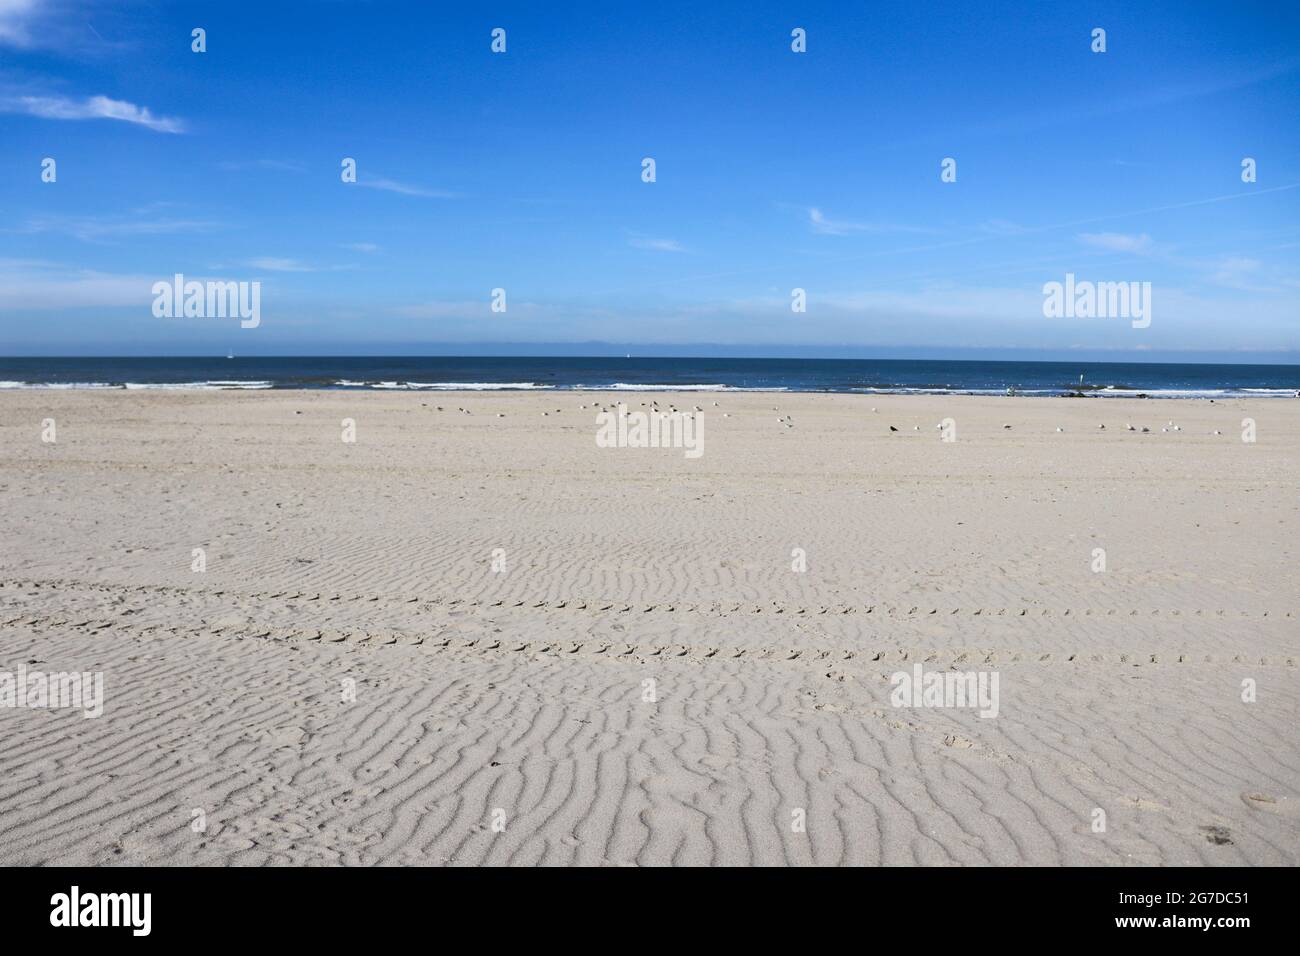 Playa vacía. Playa de arena sin gente. Paisaje marino. Foto de stock